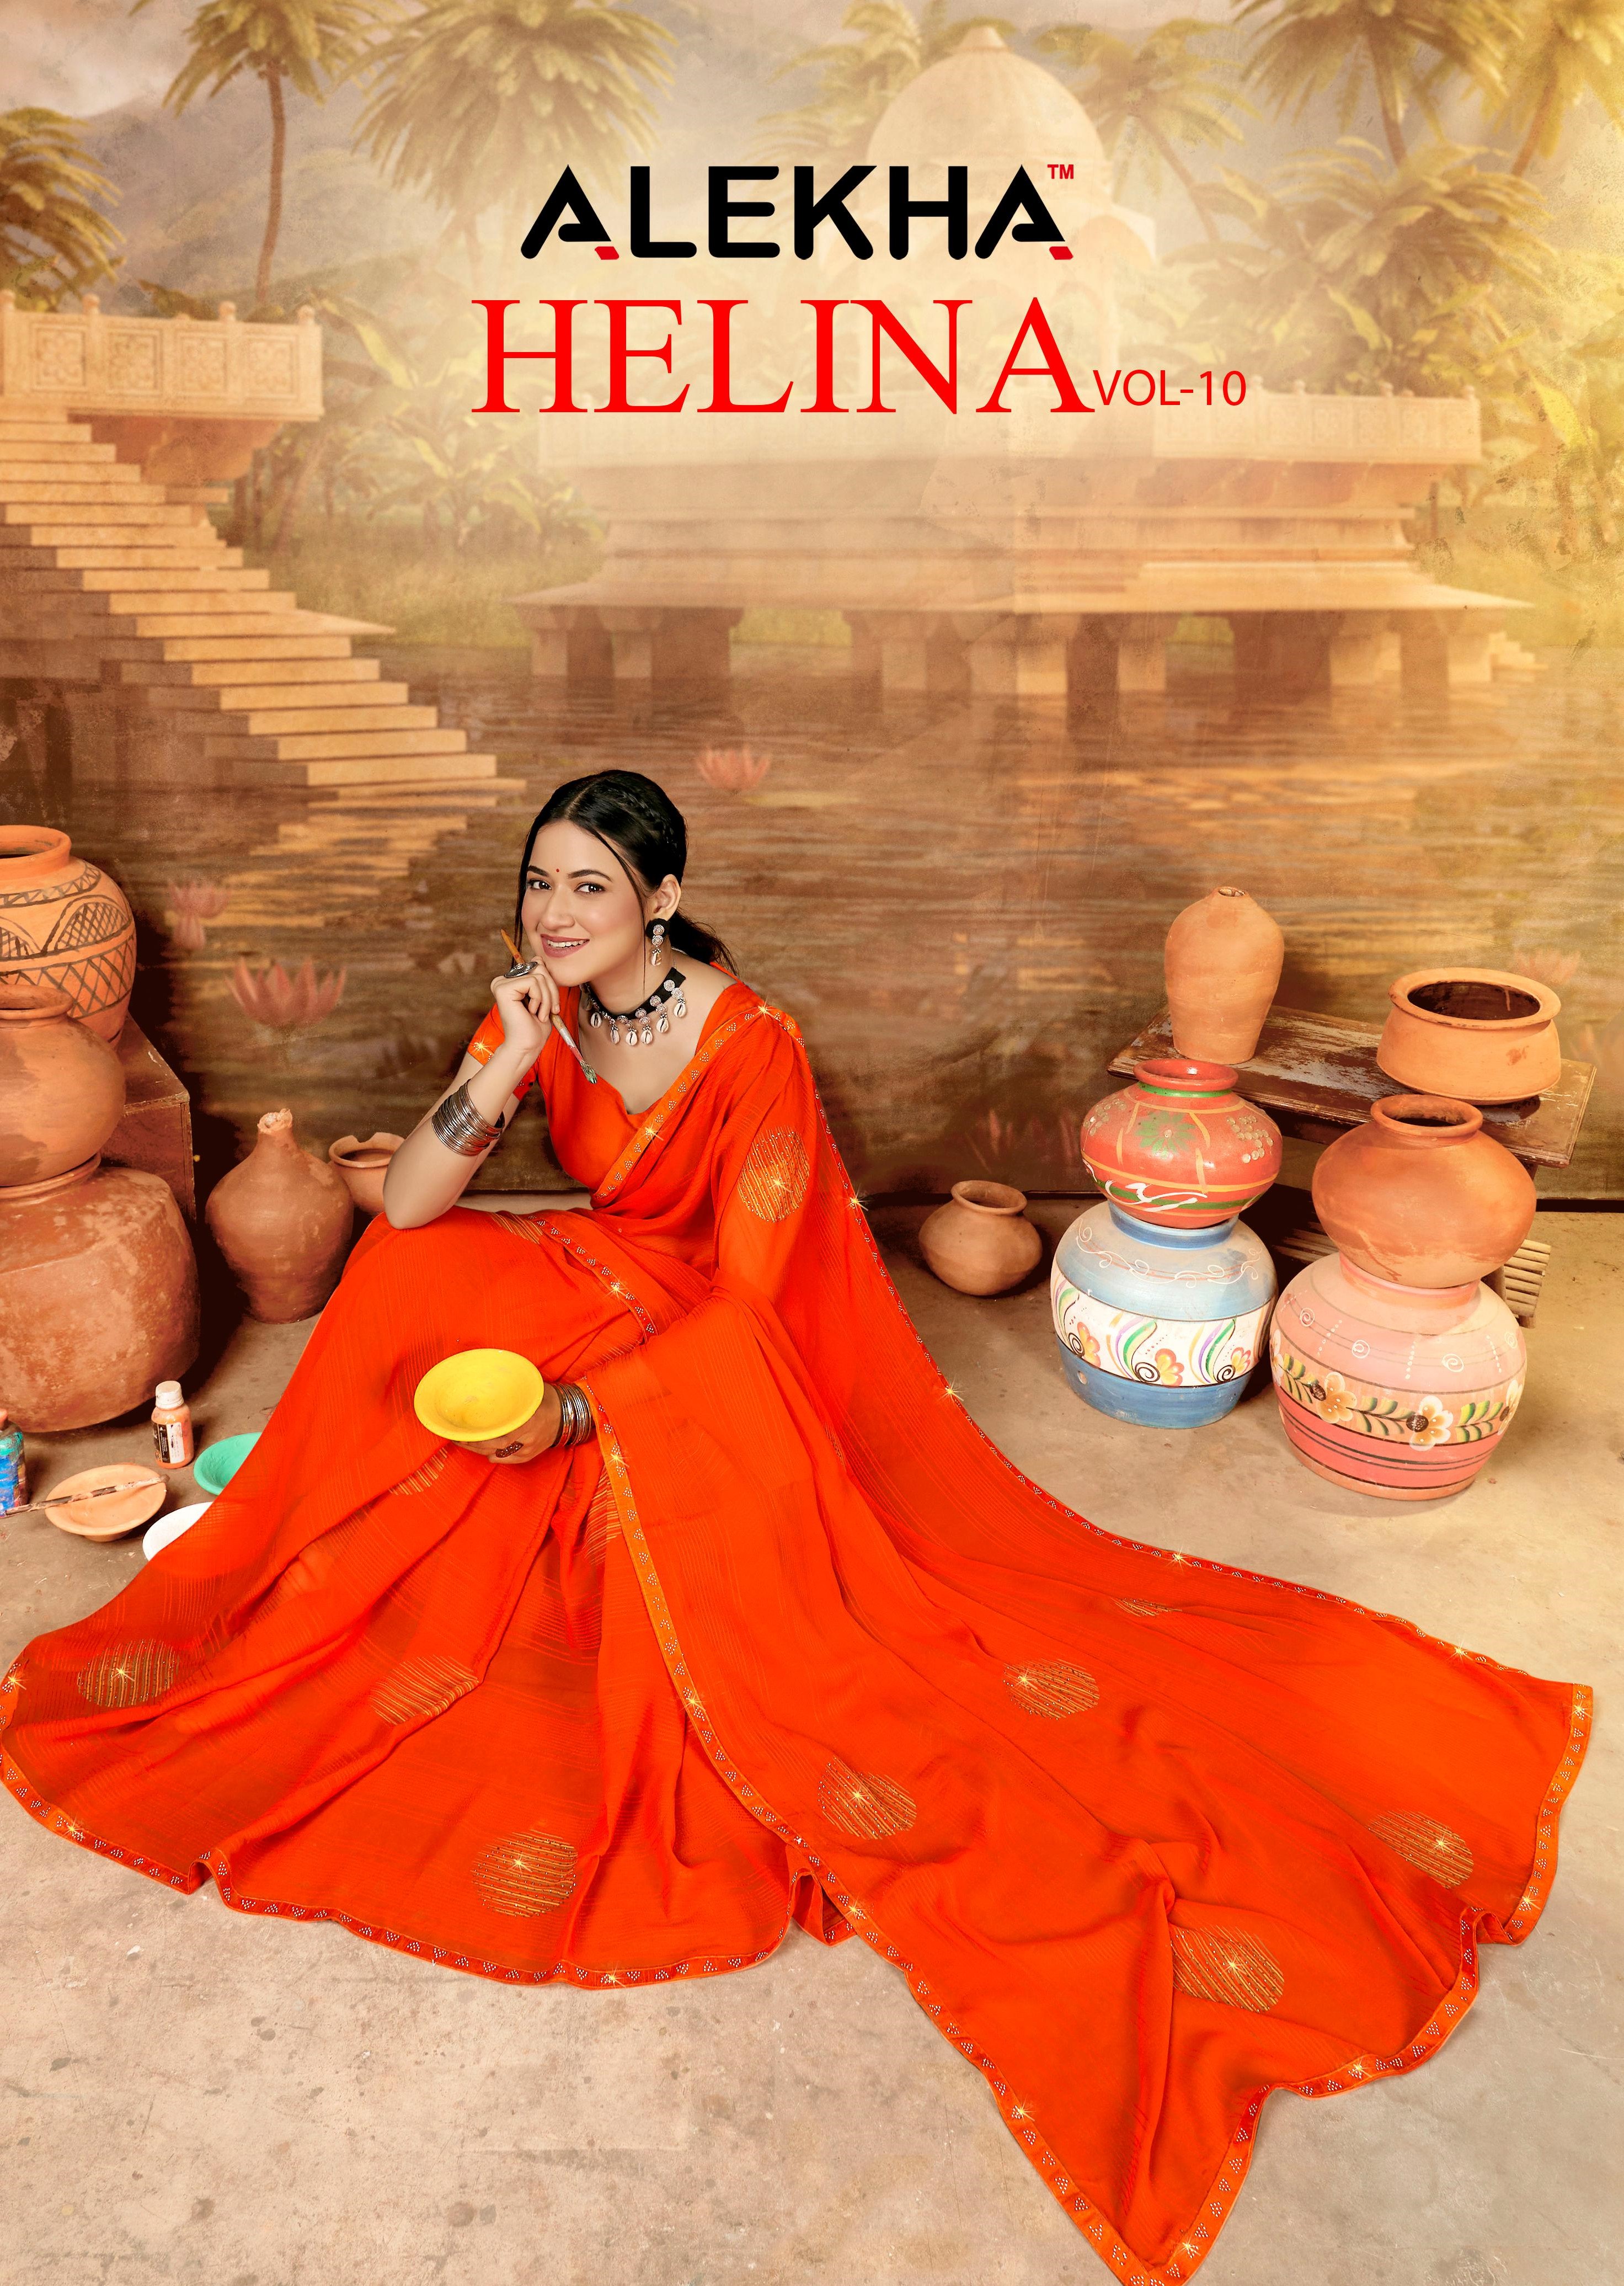 Helina Vol-10 (ALKH)